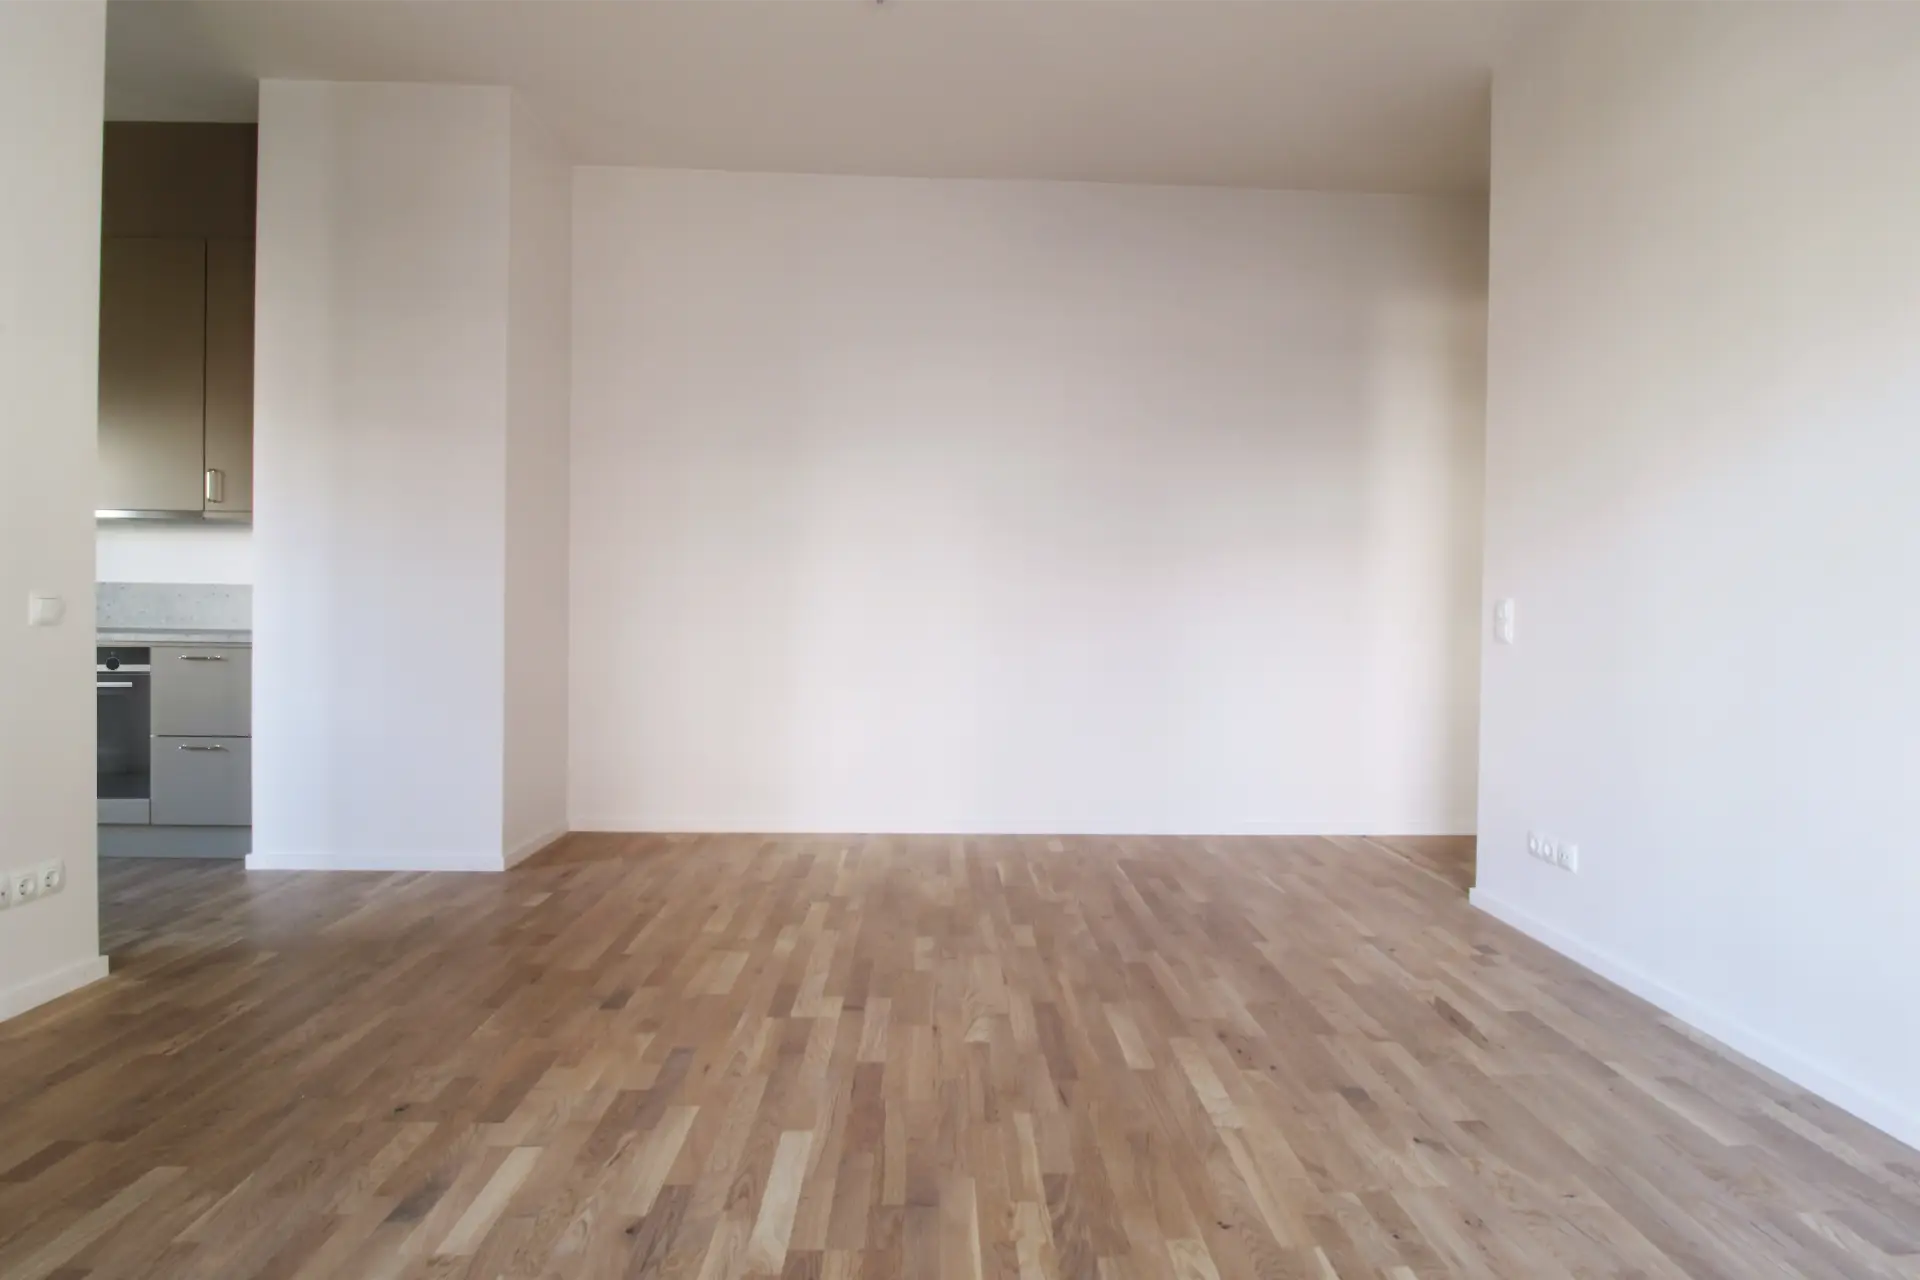 Ett rymligt, tomt rum med ljusa väggar, trägolv och en liten köksdel synlig i det vänstra hörnet med gråa skåp och vitvaror.